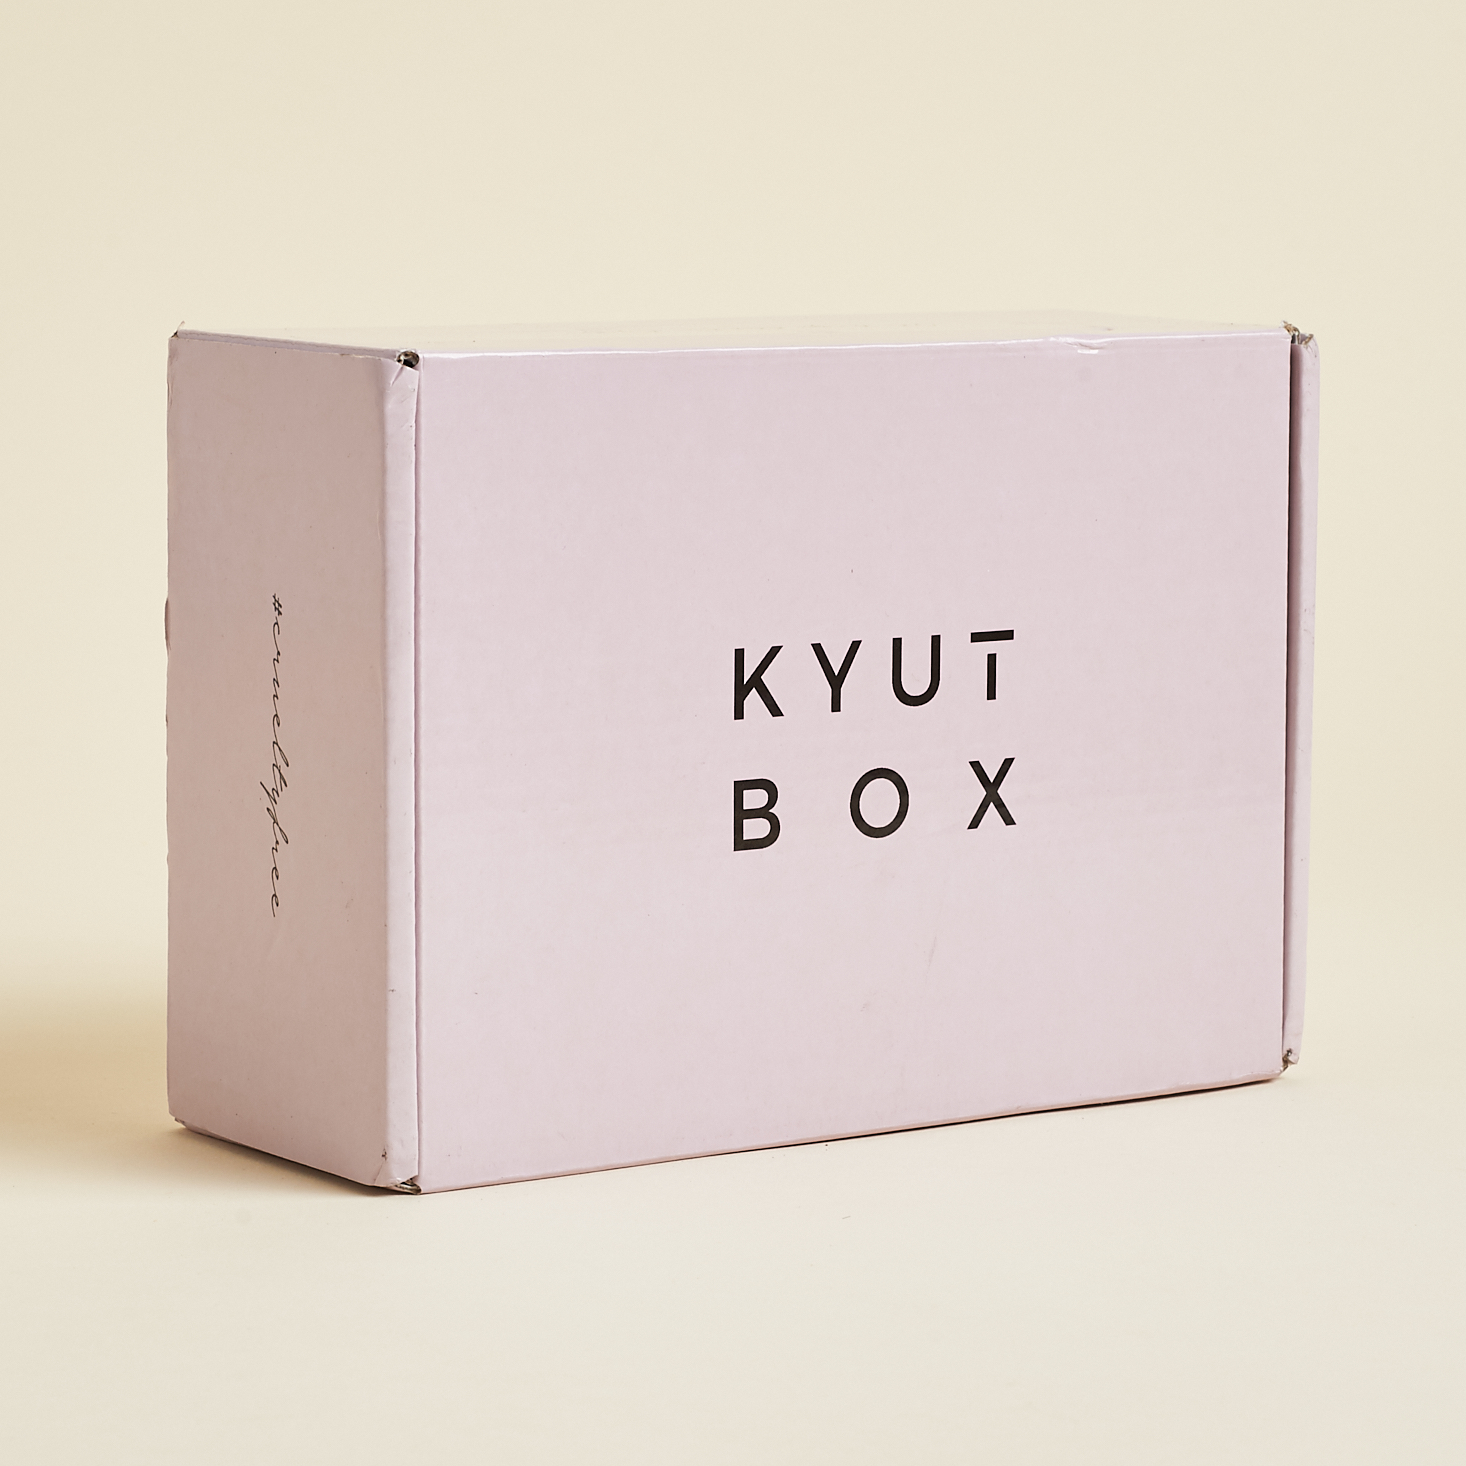 Kyut Box Vegan Beauty Review + Coupon – October 2019